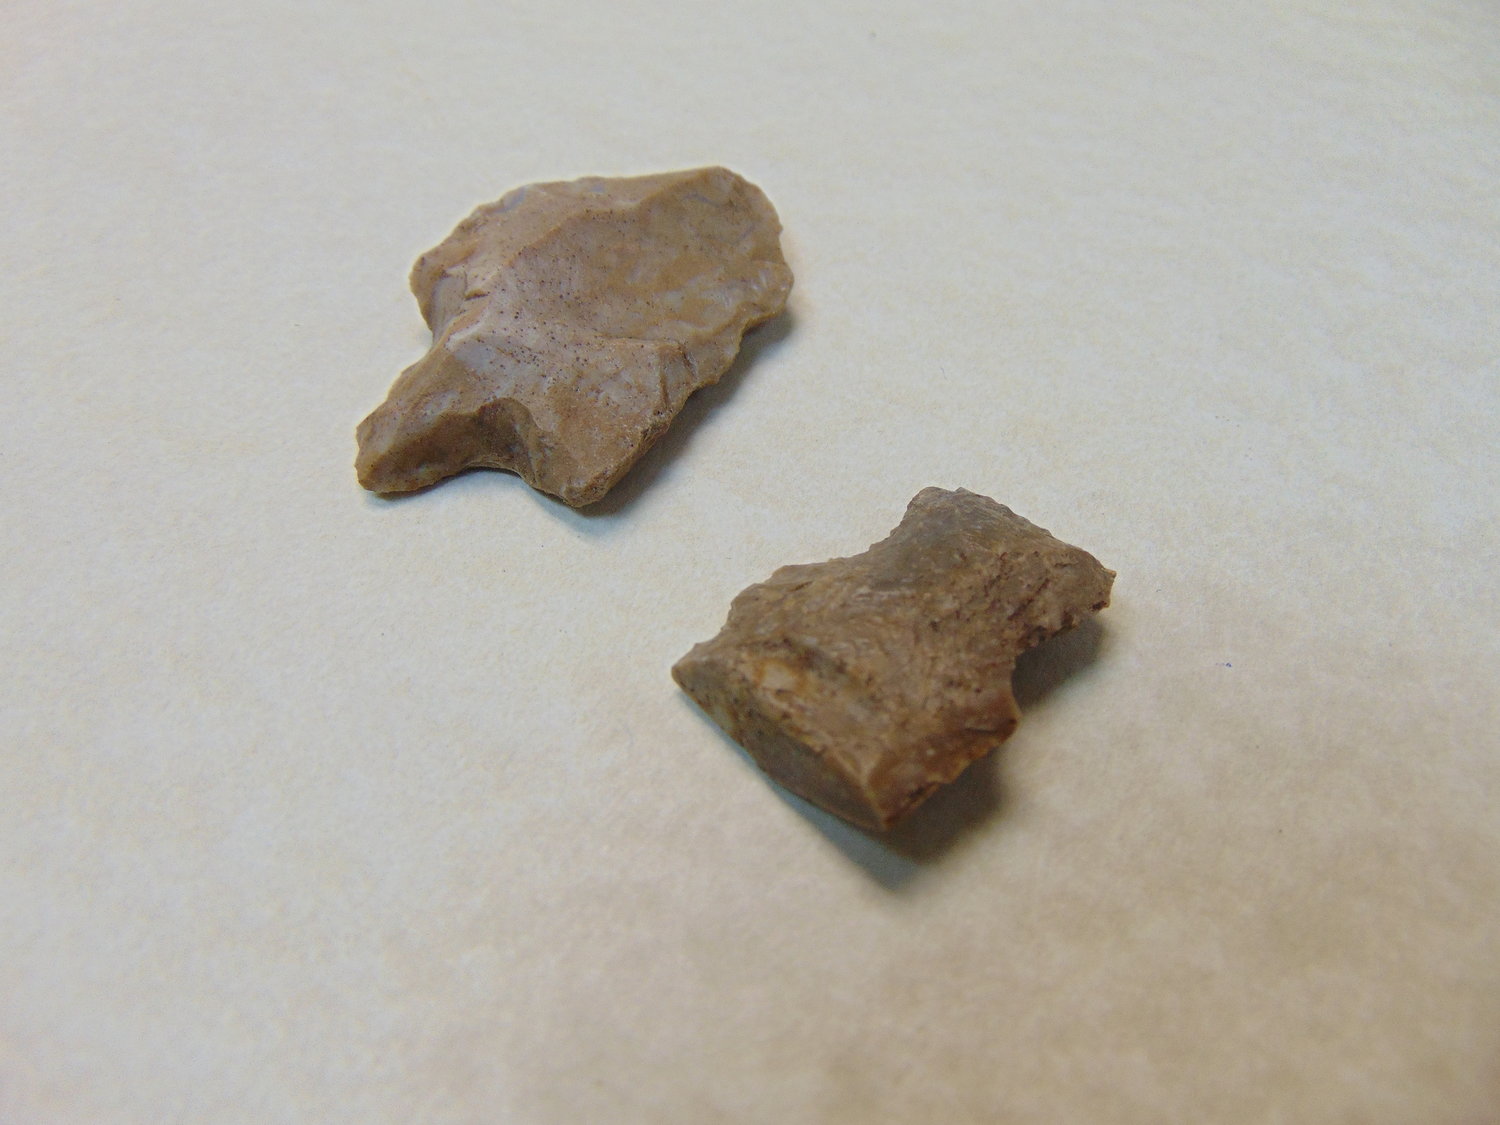 Remnants of flint arrowheads were found in the Flat Creek area.